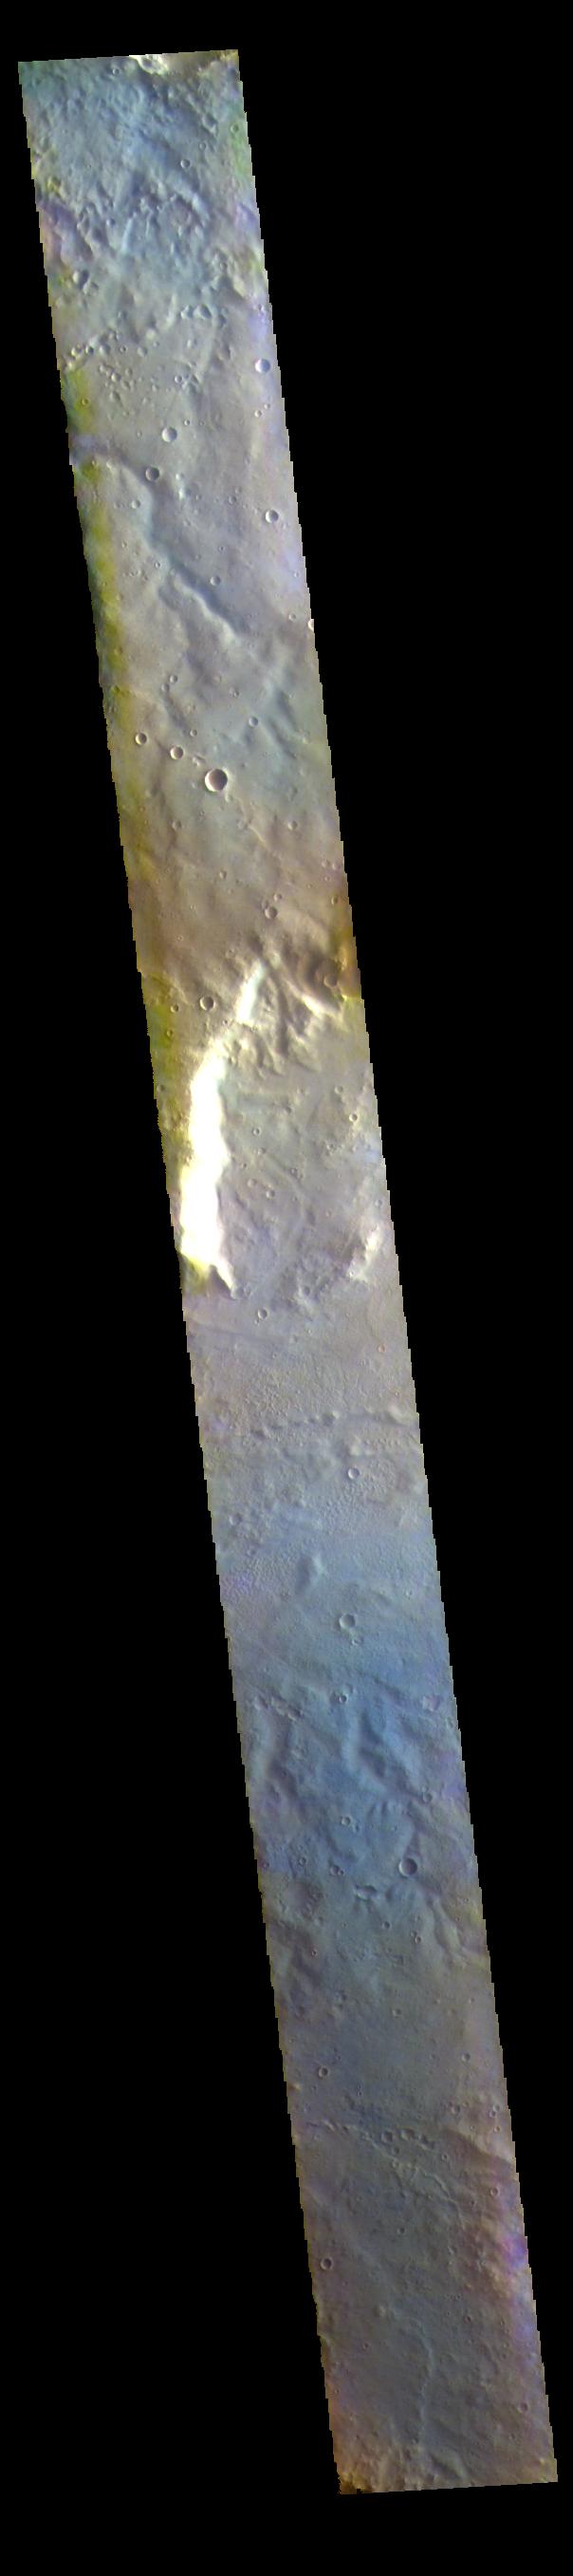 PIA25101: Huygens Crater - False Color